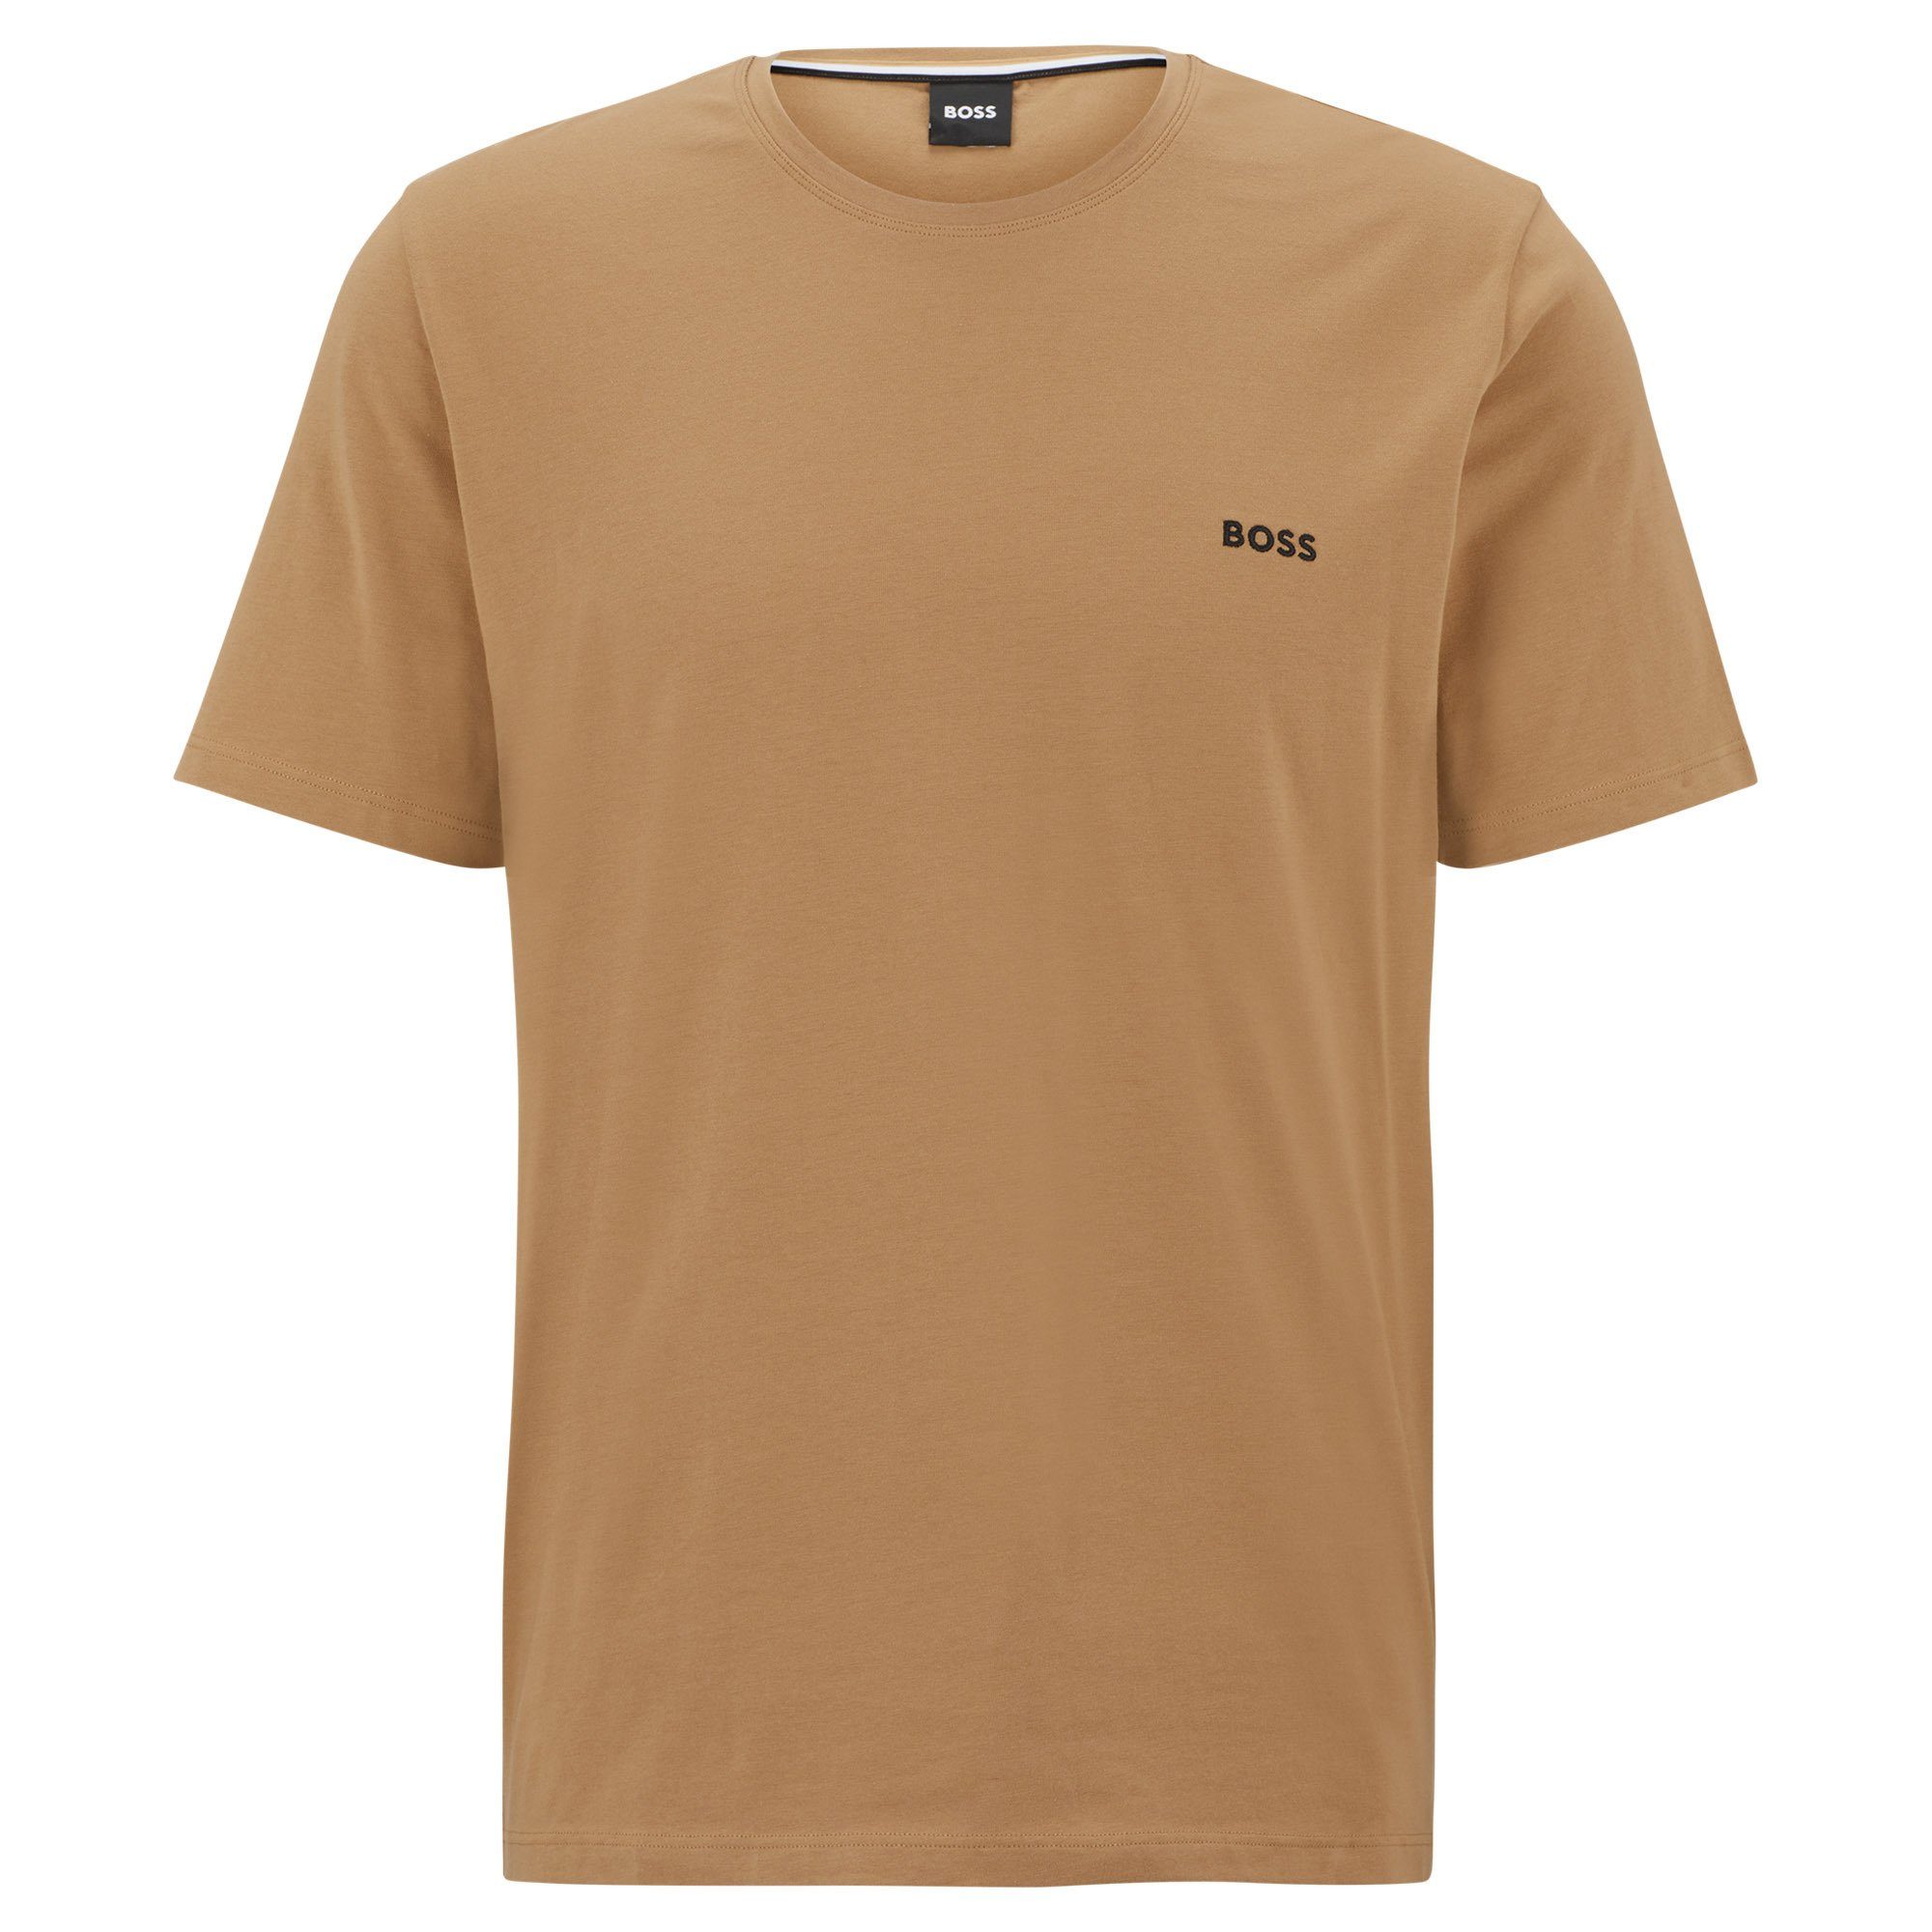 BOSS T-Shirt Herren T-Shirt - Mix & Match, Rundhals, Baumwolle Beige (Medium Beige)